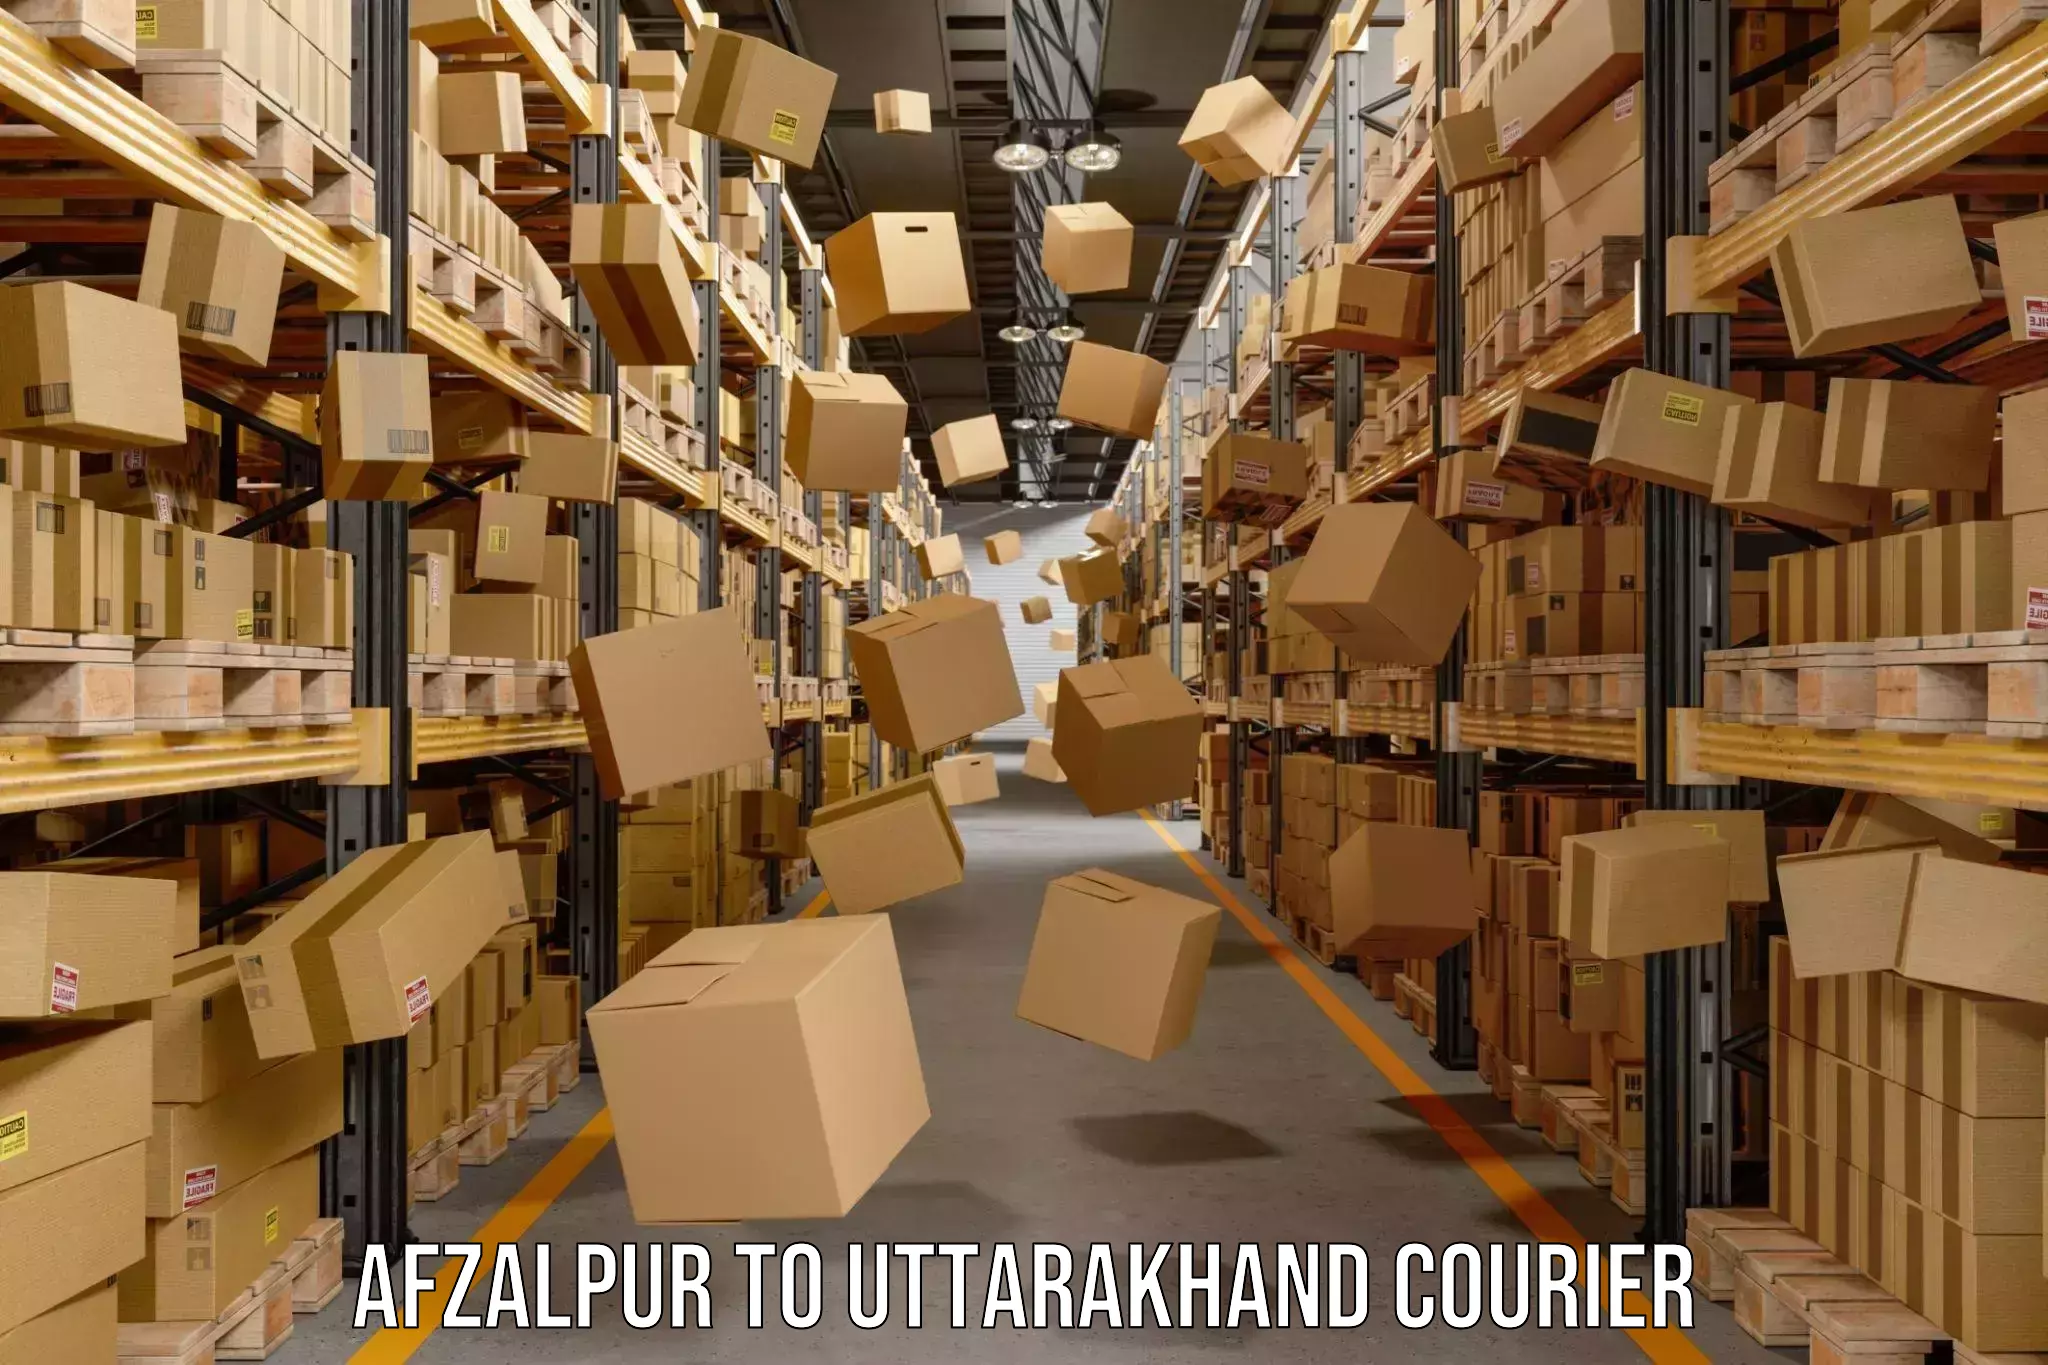 Digital courier platforms Afzalpur to Tehri